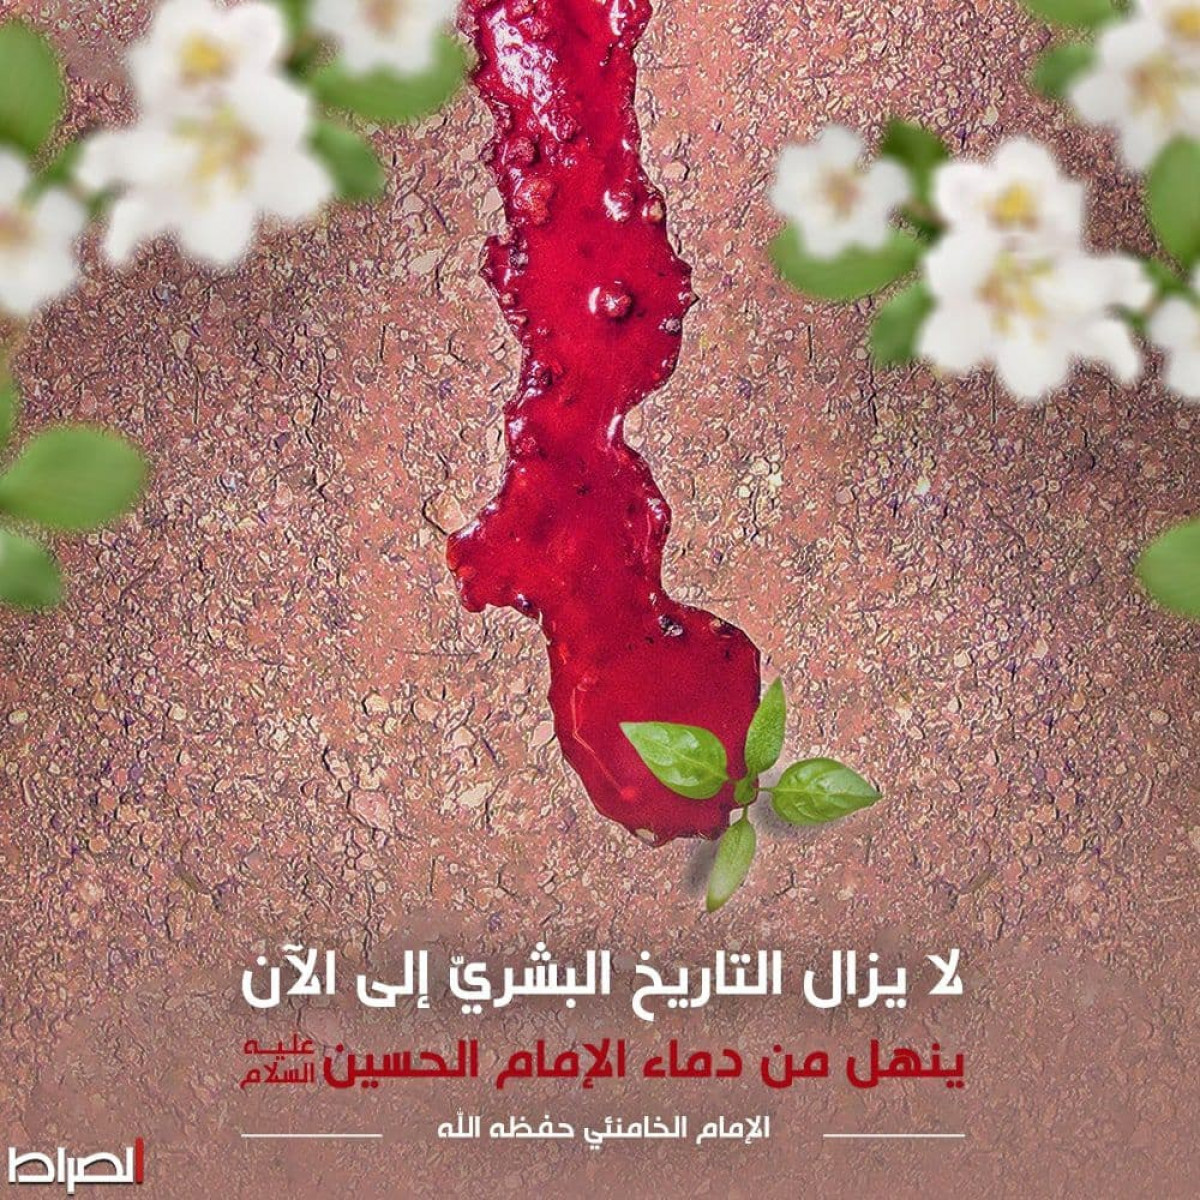 دماء الإمام الحسين عليه السلام